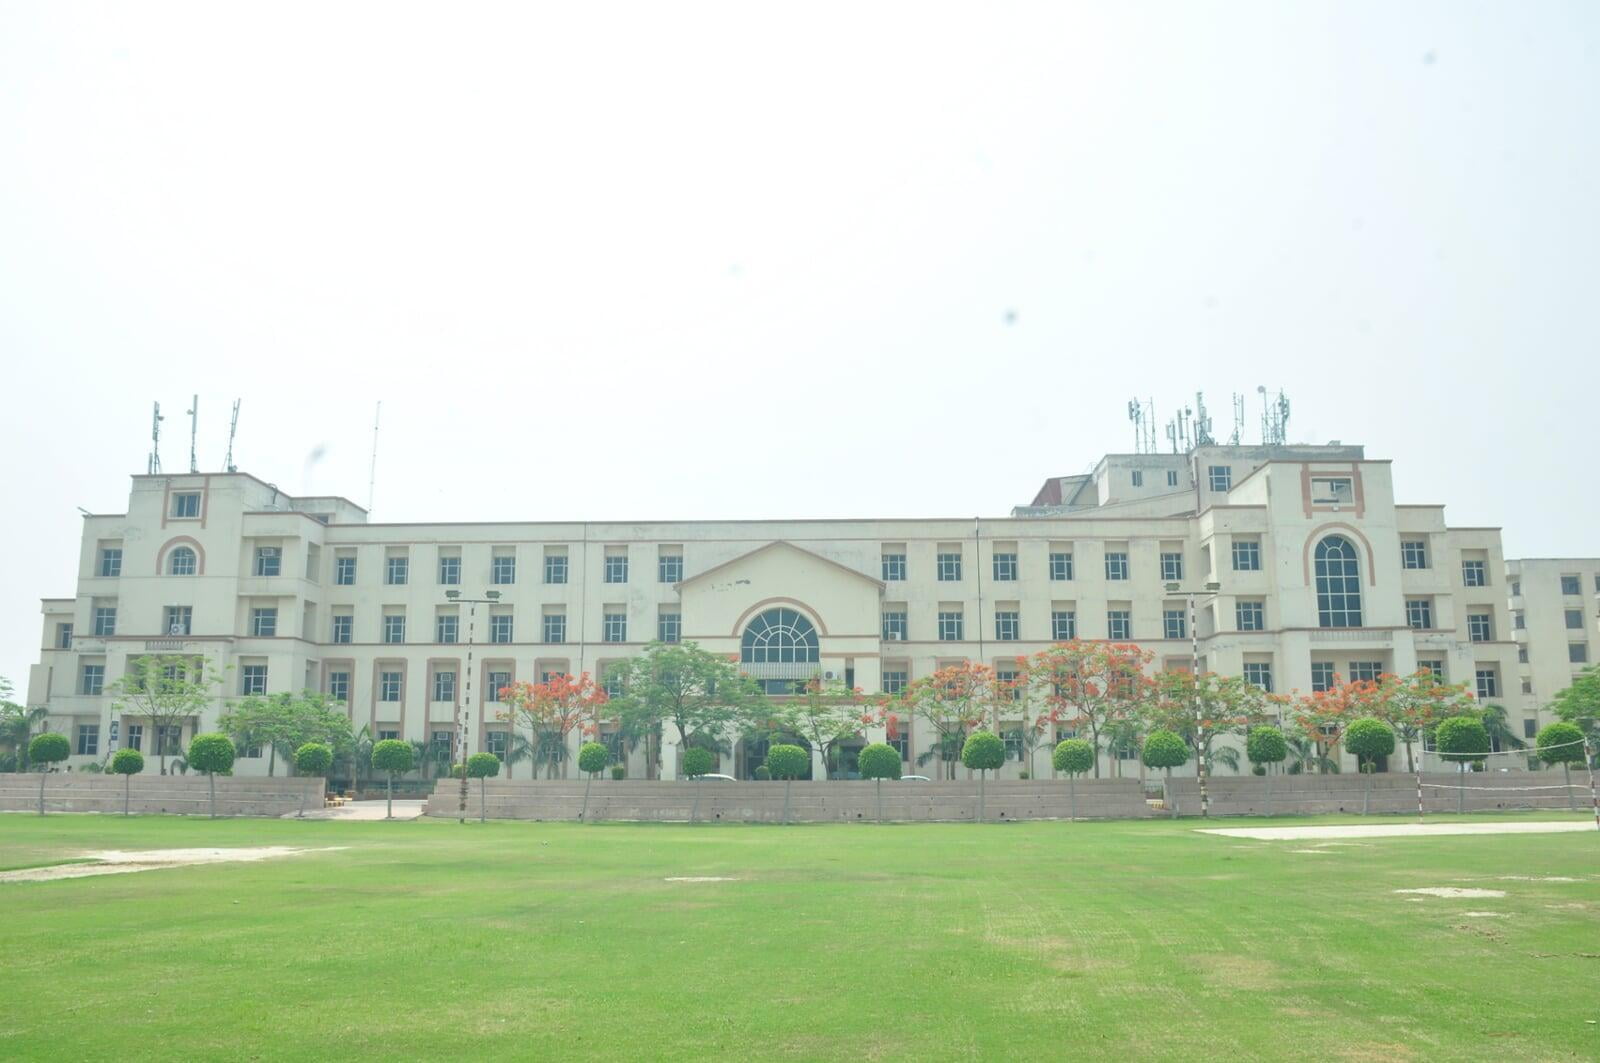 Best Engineering College in Delhi NCR